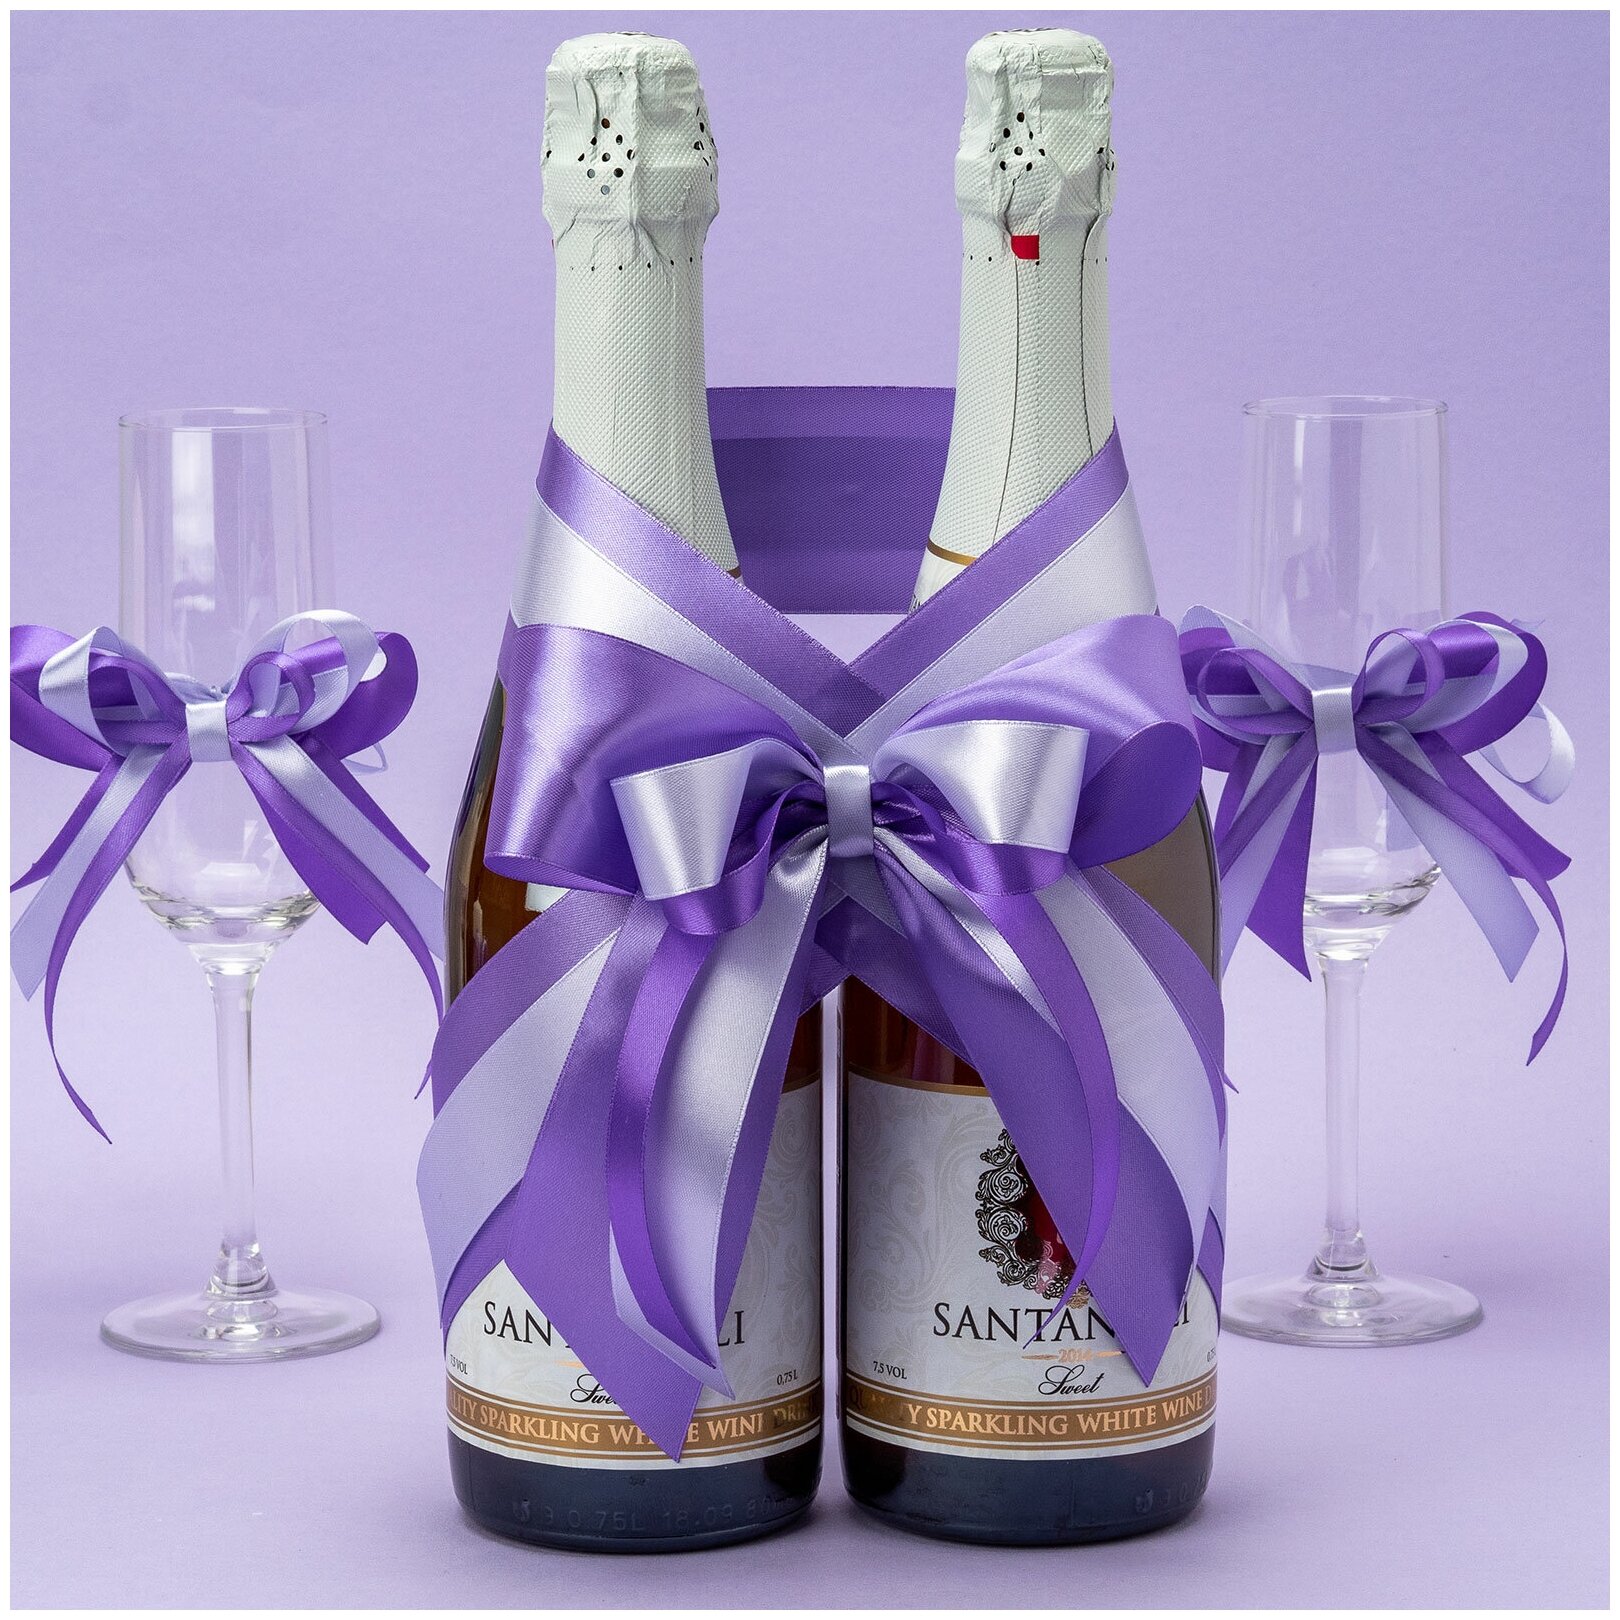 Свадебное украшение для шампанского новобрачных "Сиреневый бант" из атласных лент лилового и светлого фиолетового оттенков